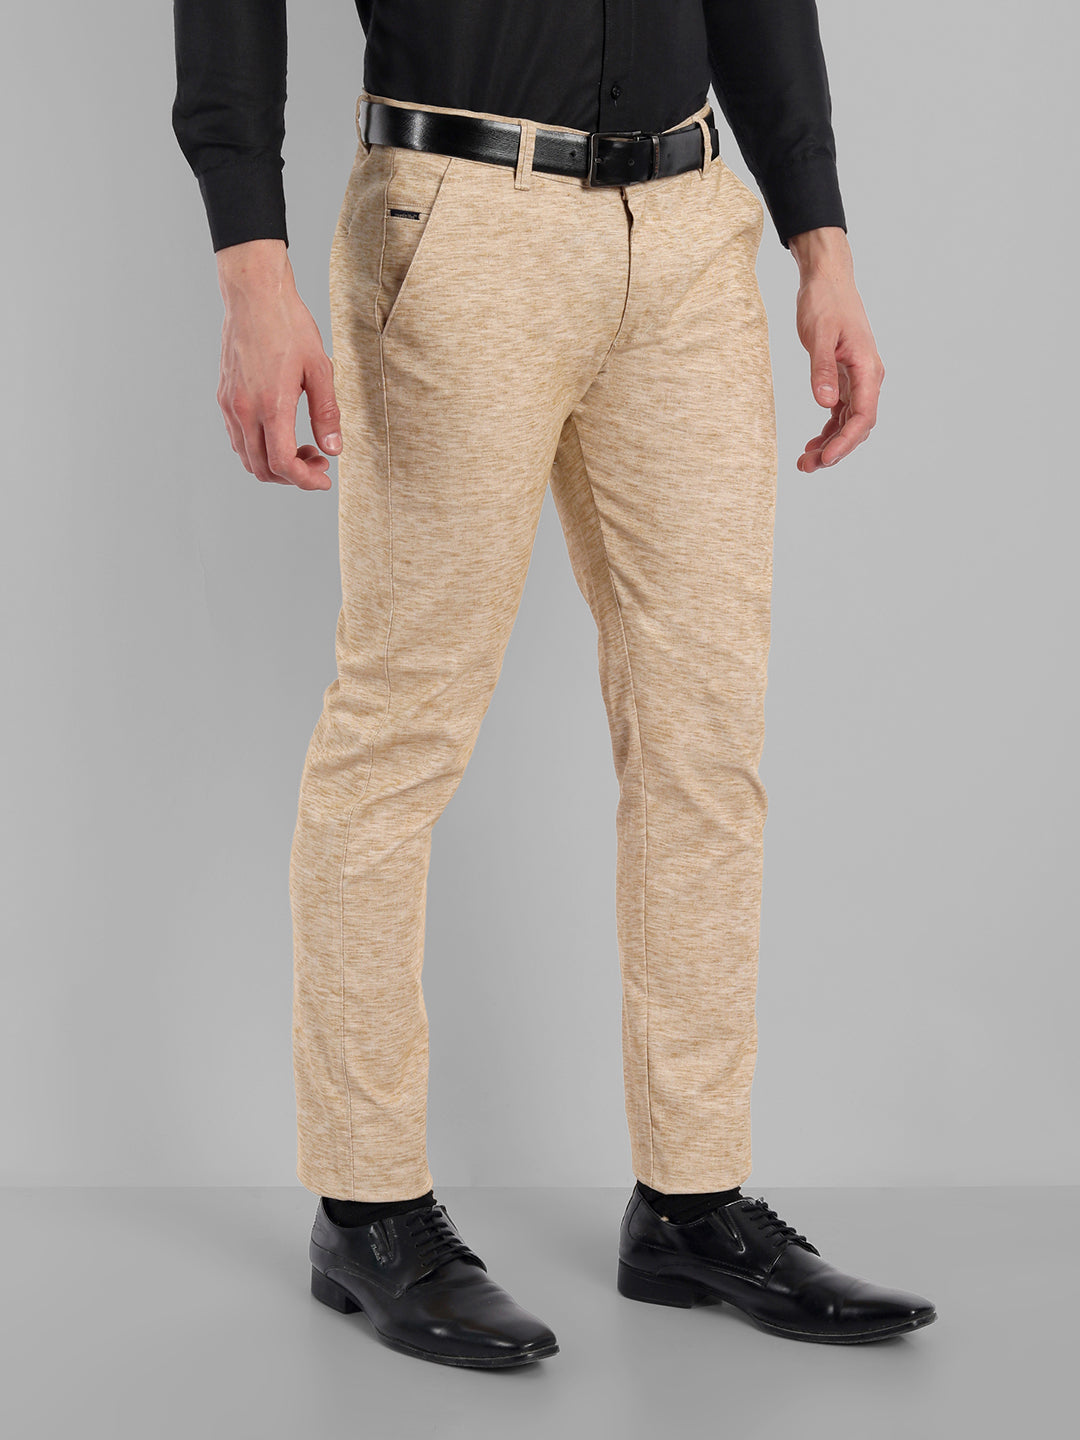 Vesatile Cotton Blend Formal Trousers - Beige